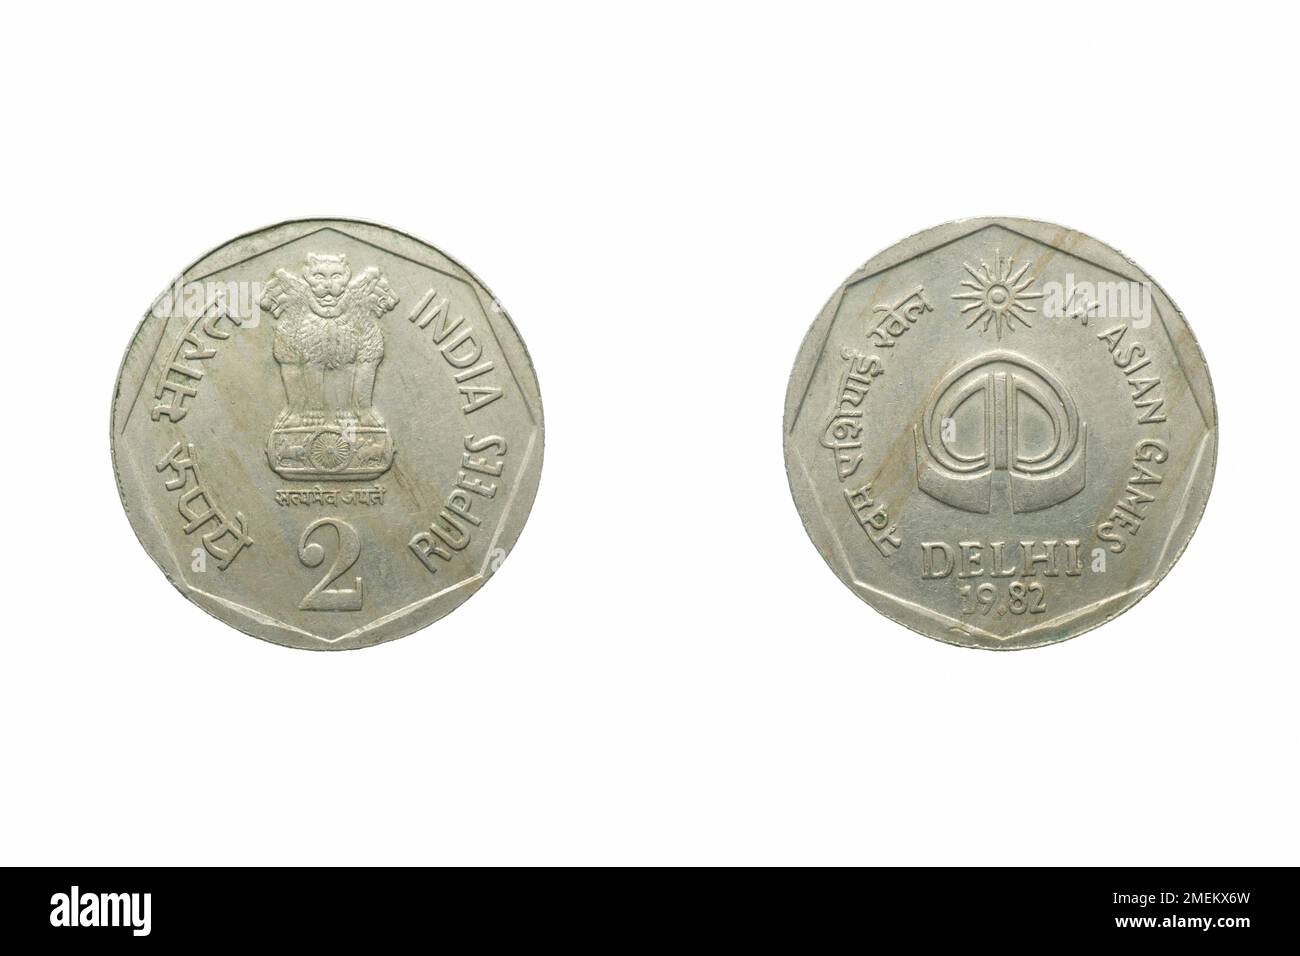 2 Rupes Indianermünze mit delhi auf der Rückseite, Studioaufnahme vor weißem Hintergrund Stockfoto